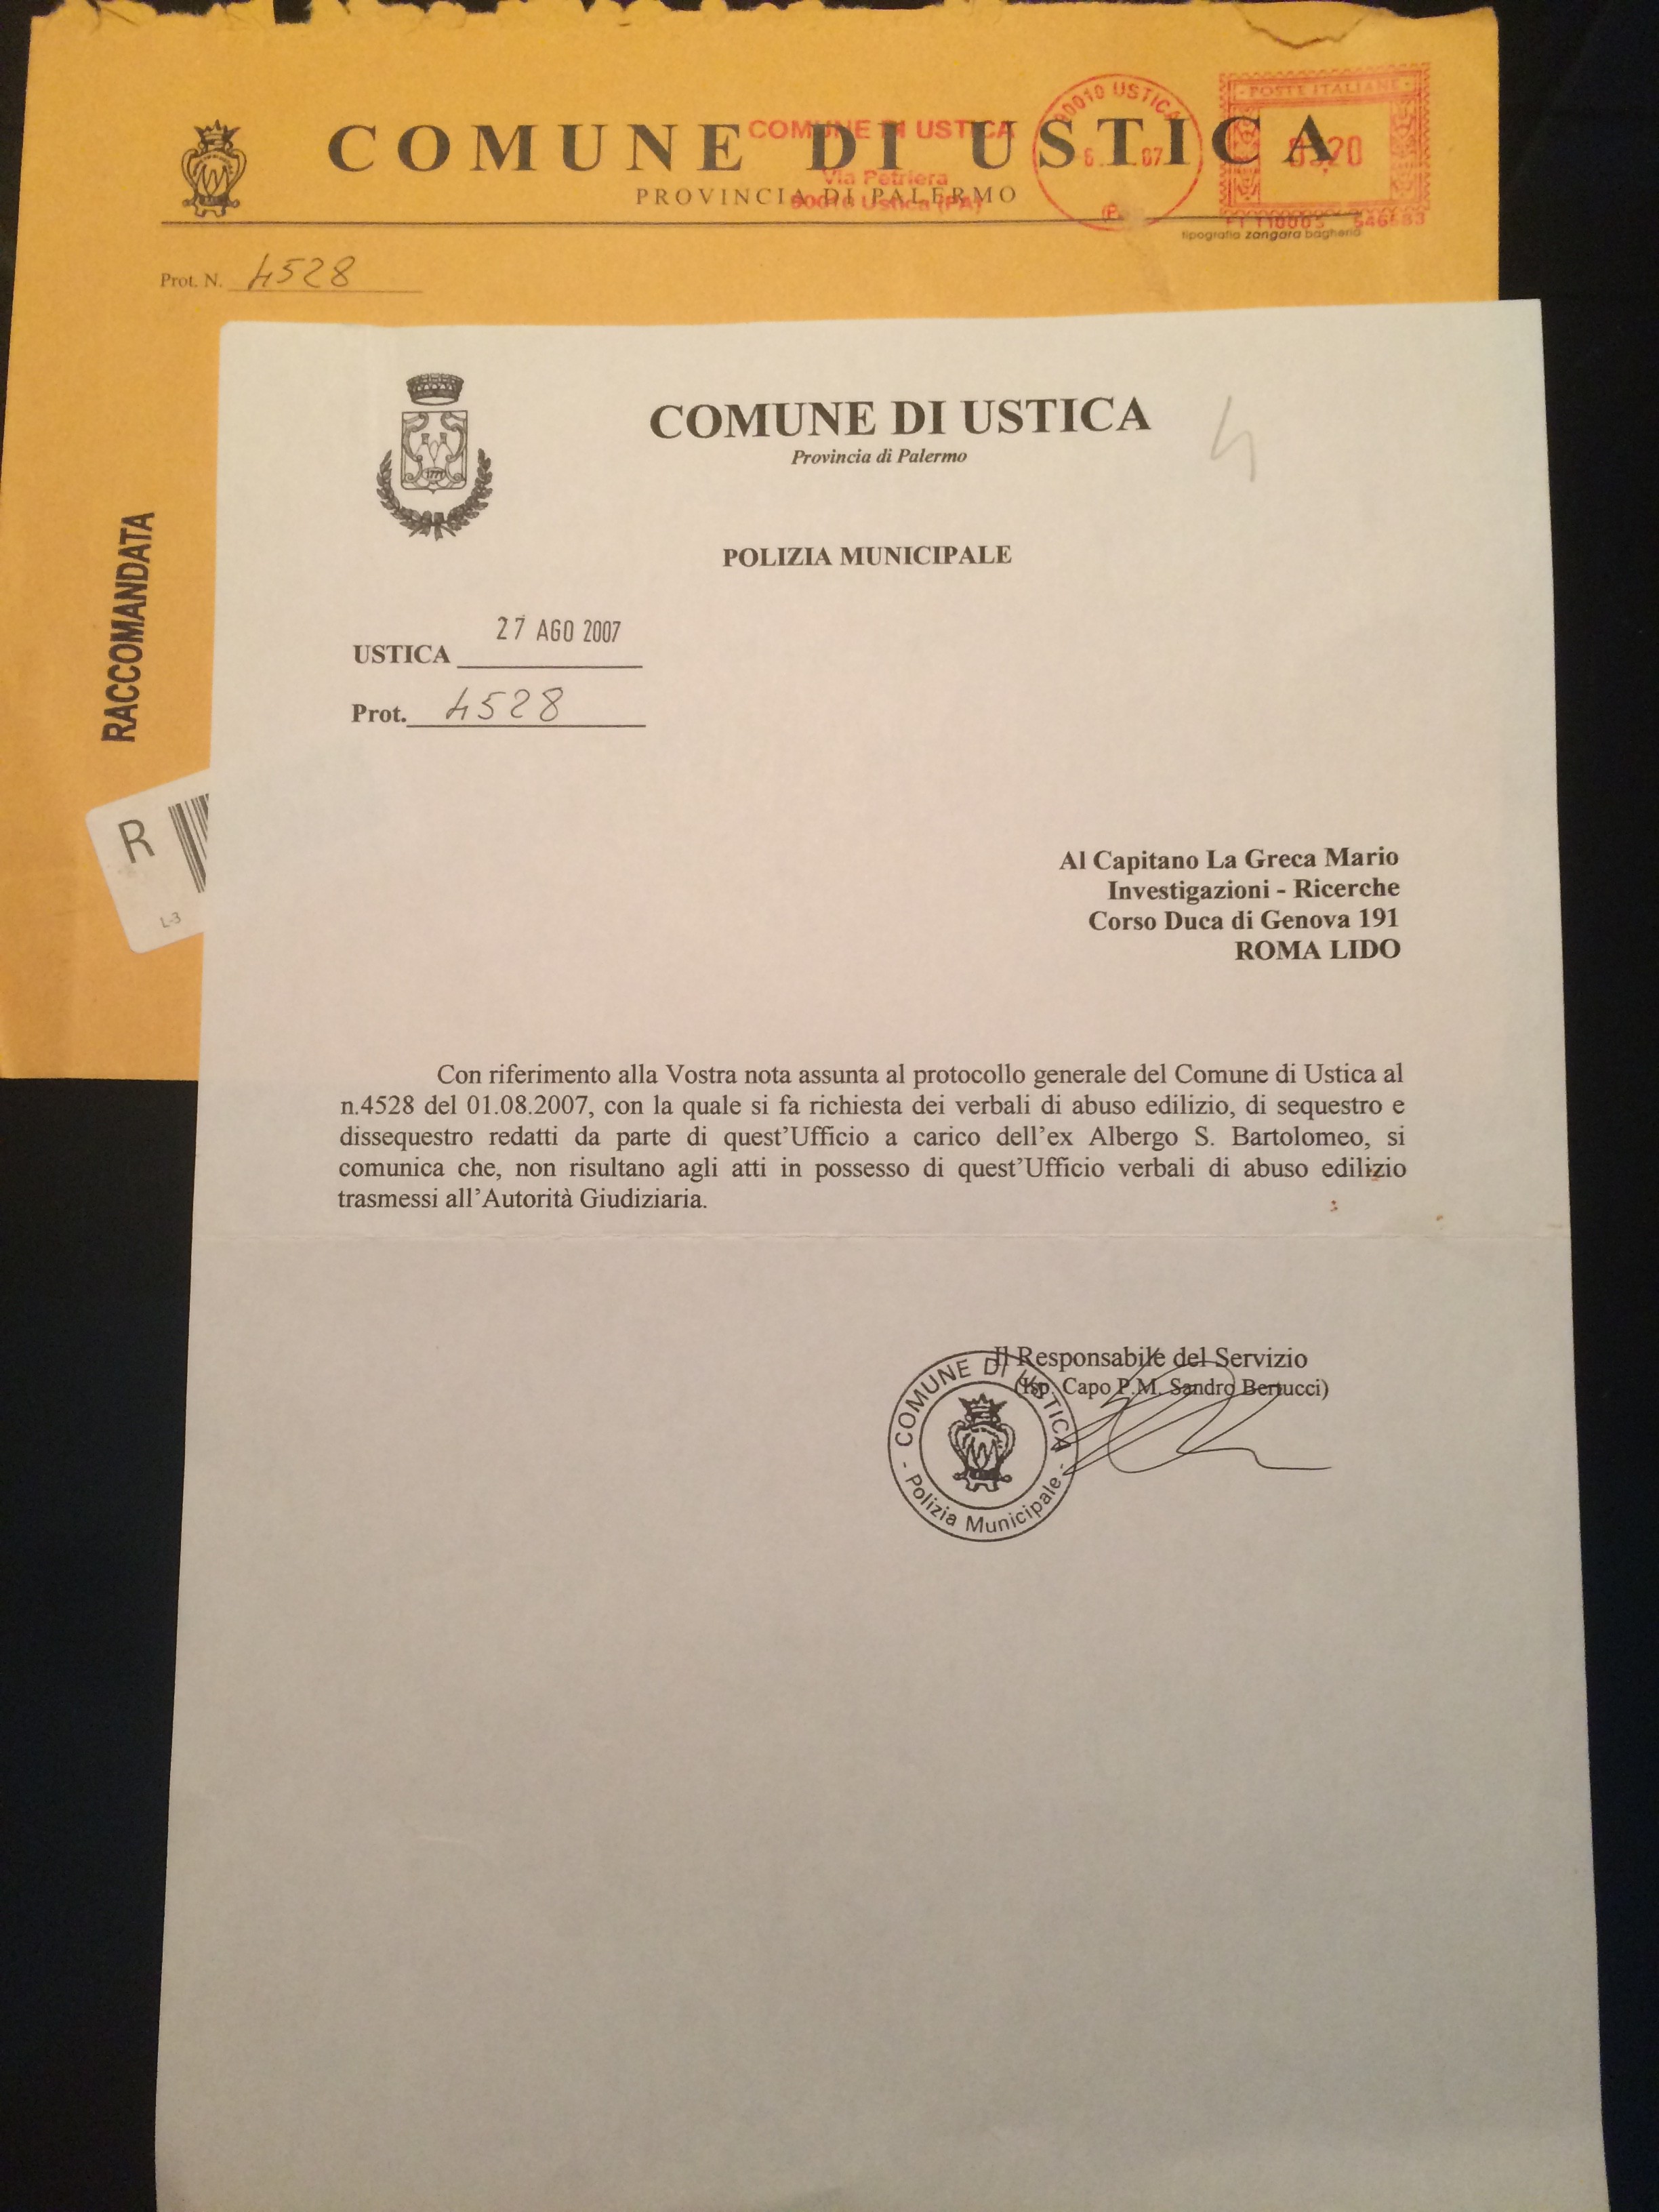 Documento della Polizia Minicipale di Ustica prot. n. 4528 del 27 agosto 2007